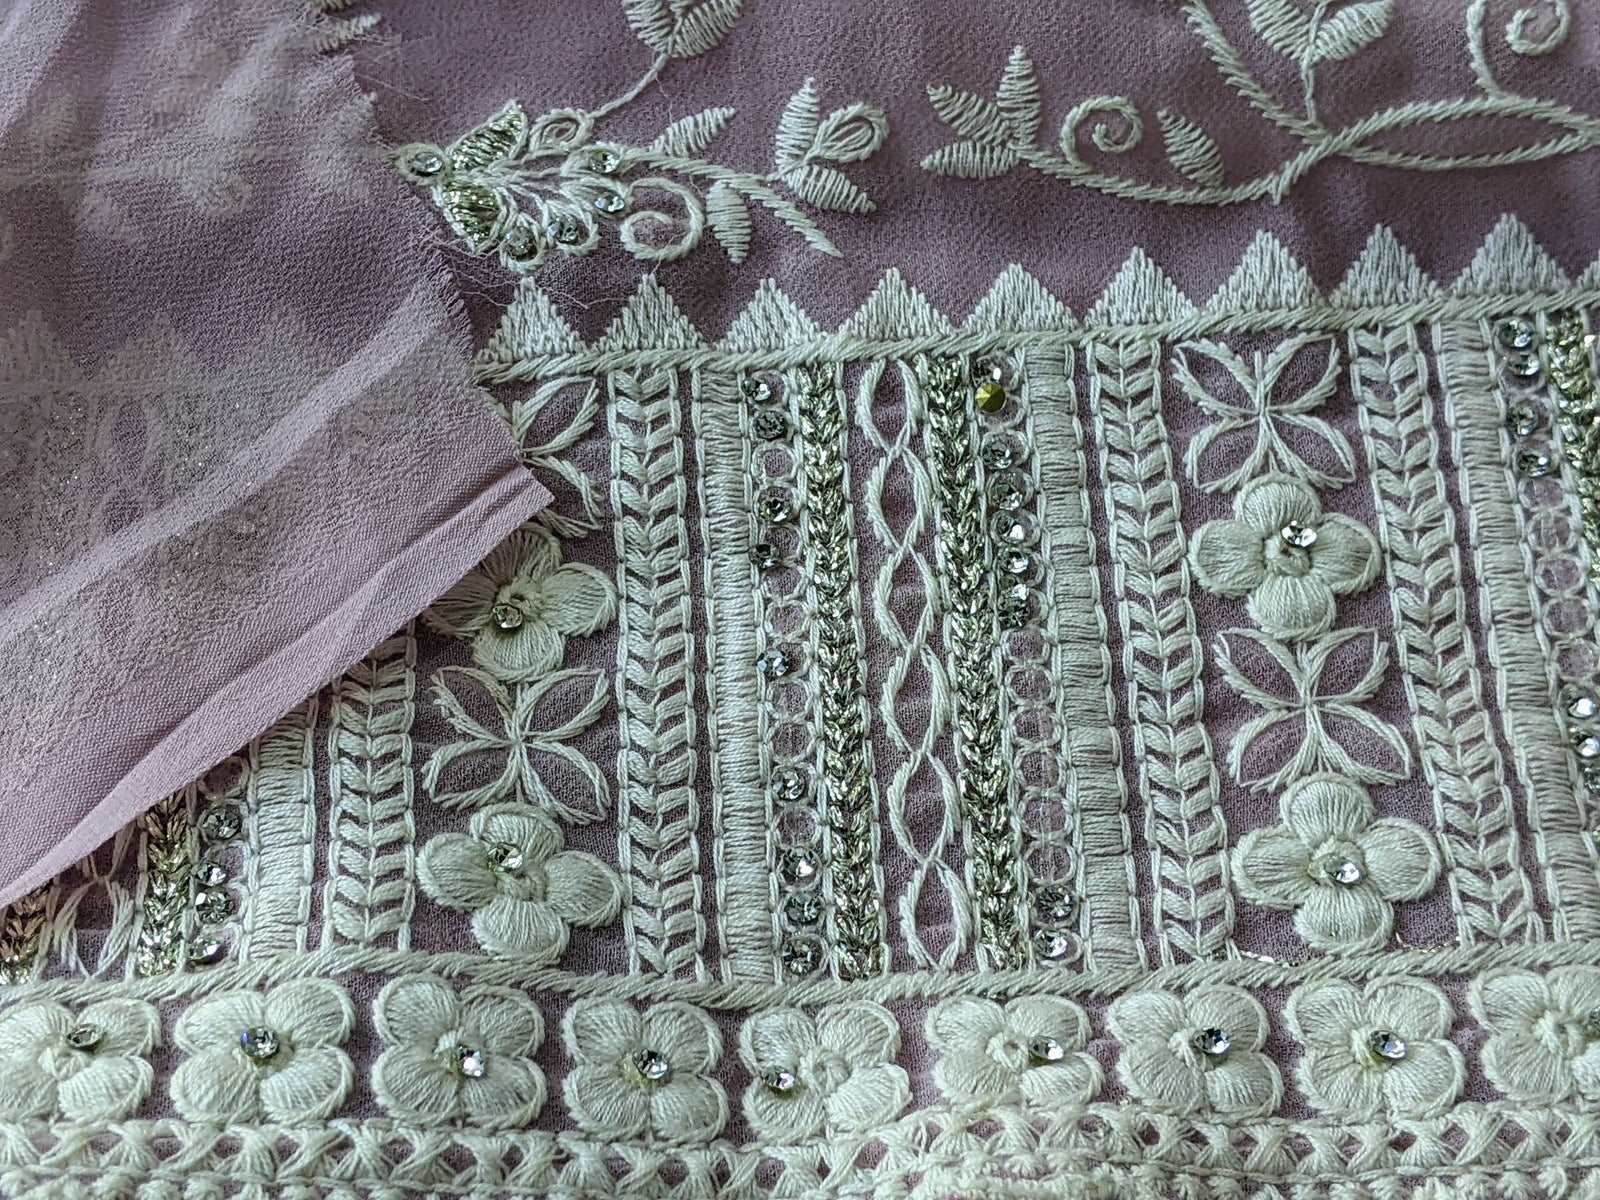 Pristine Blush Thread Embroidery Georgette Saree